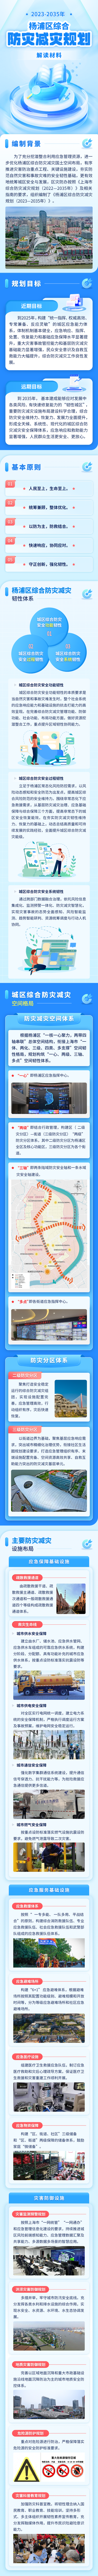 2023-2035年杨浦区综合防灾减灾规划政策解读.png